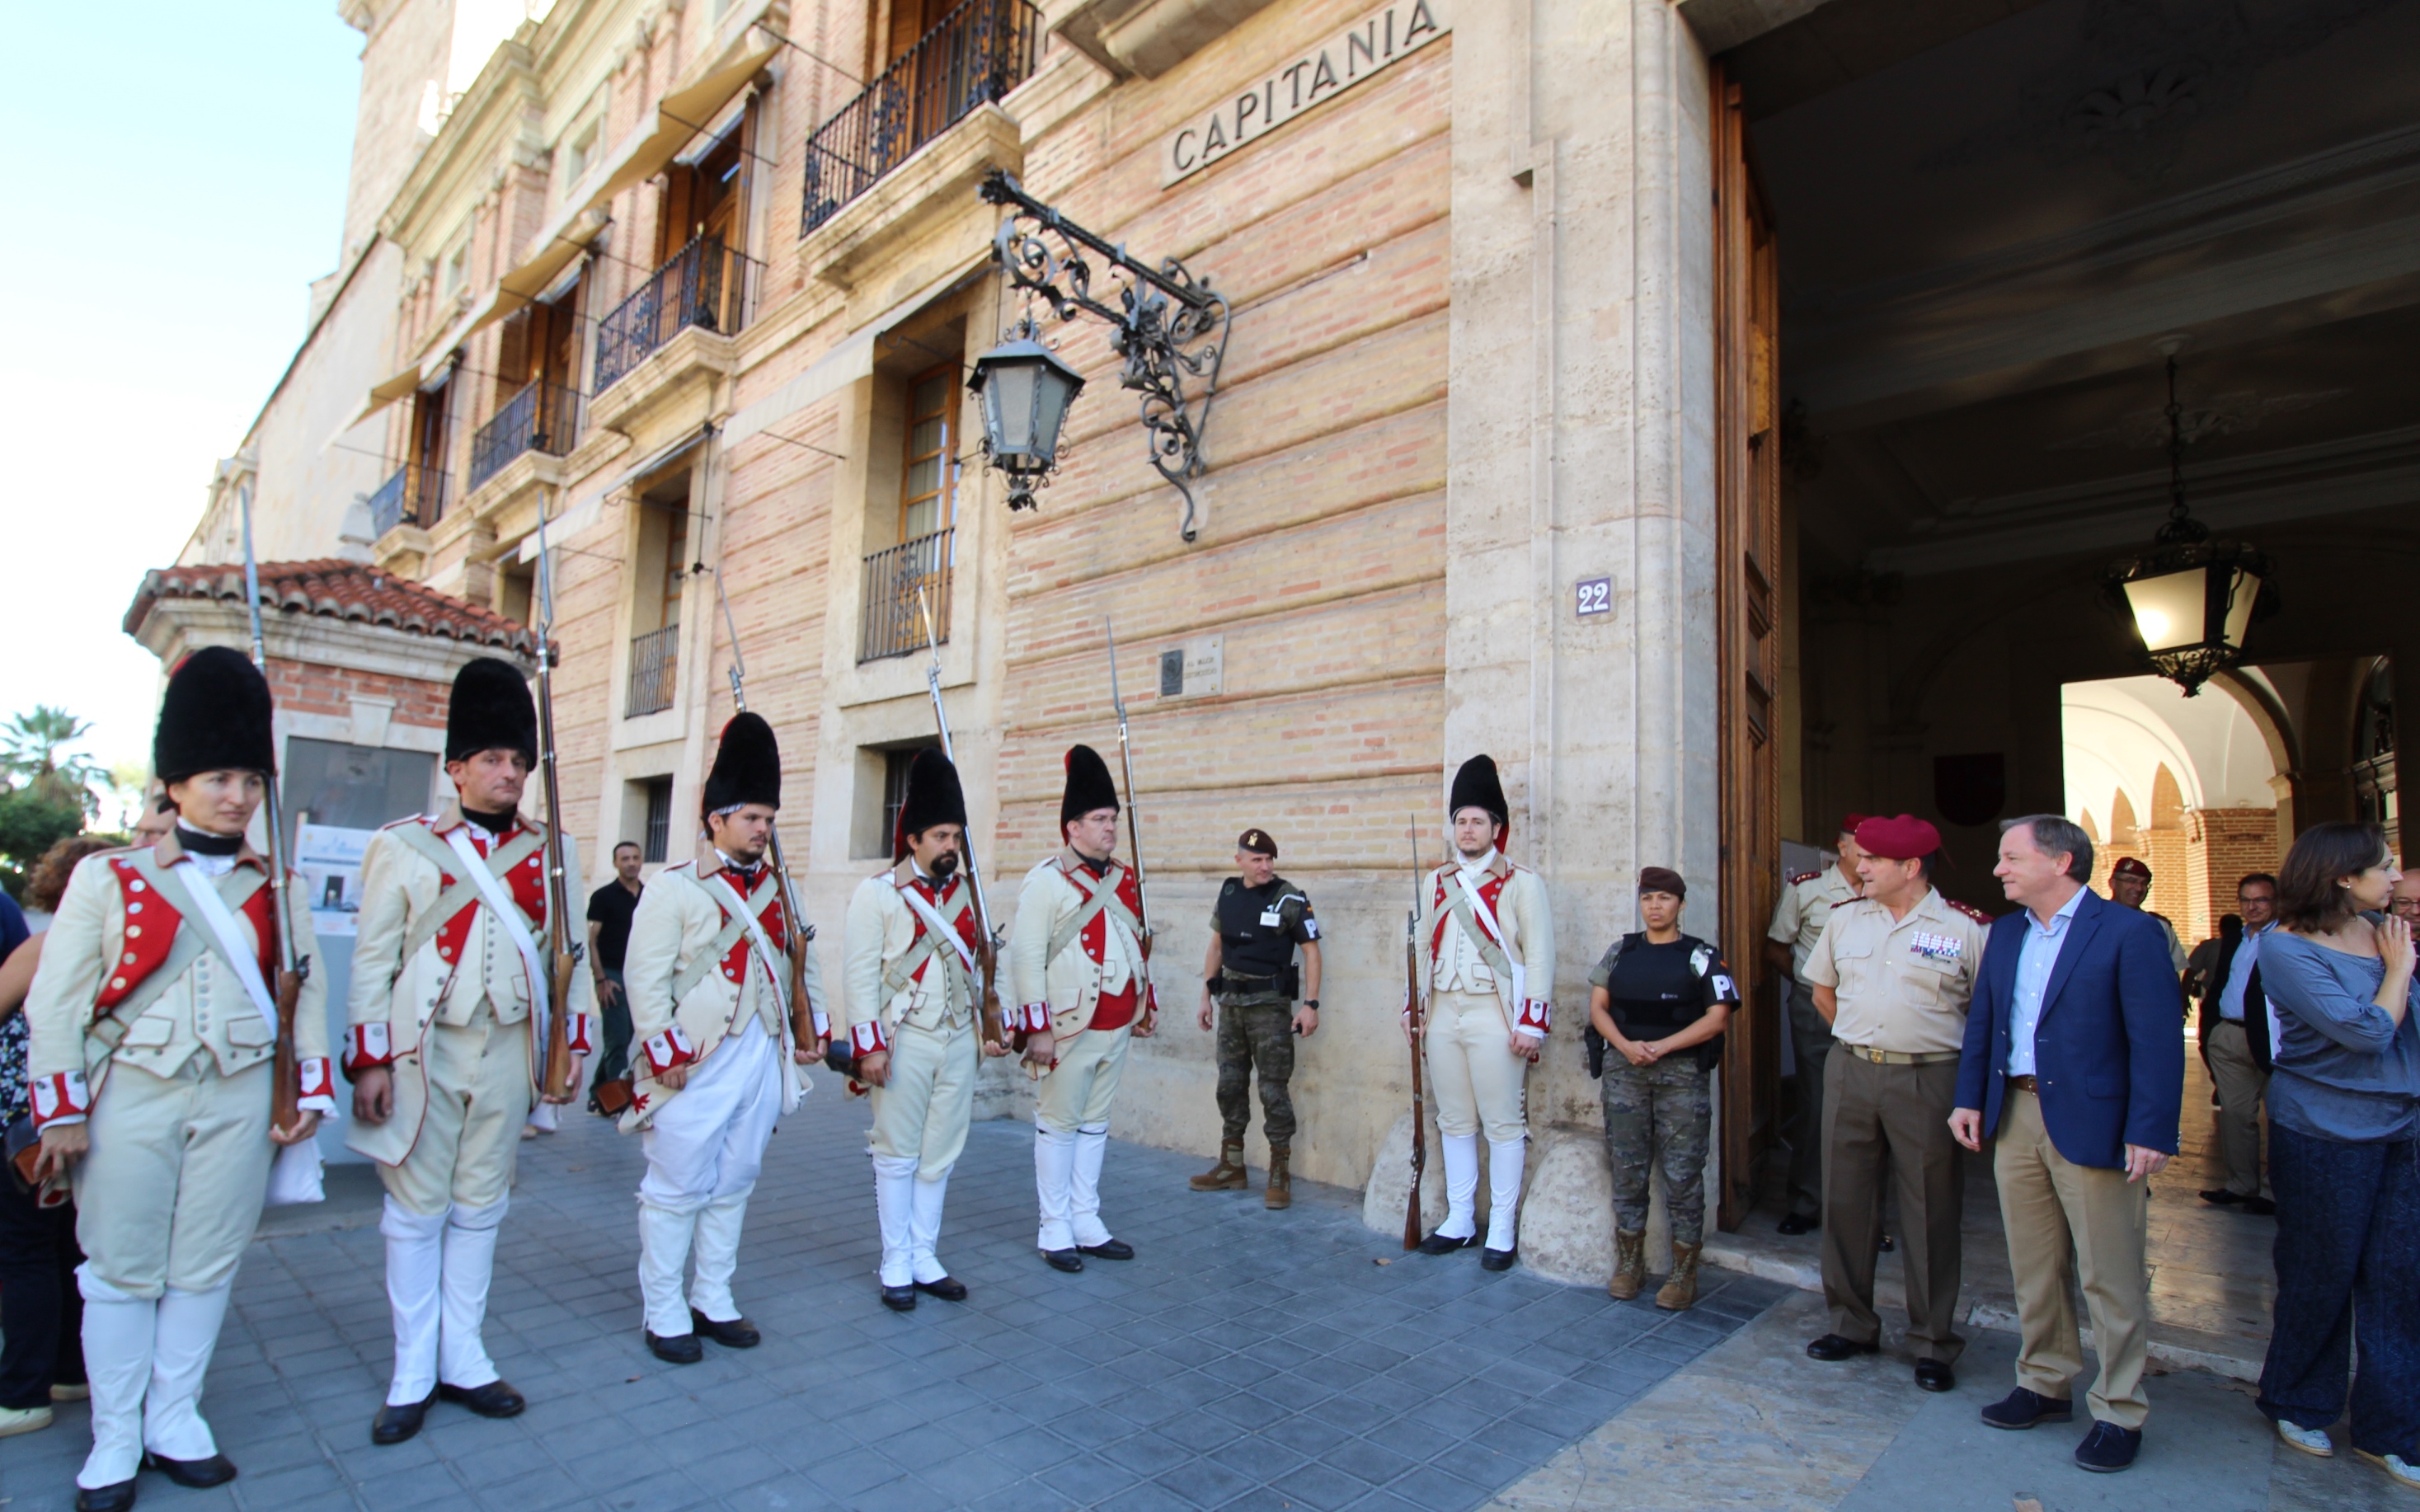 El delegado de Gobierno participa en los actos conmemorativos del 175 aniversario de Capitanía General de Valencia